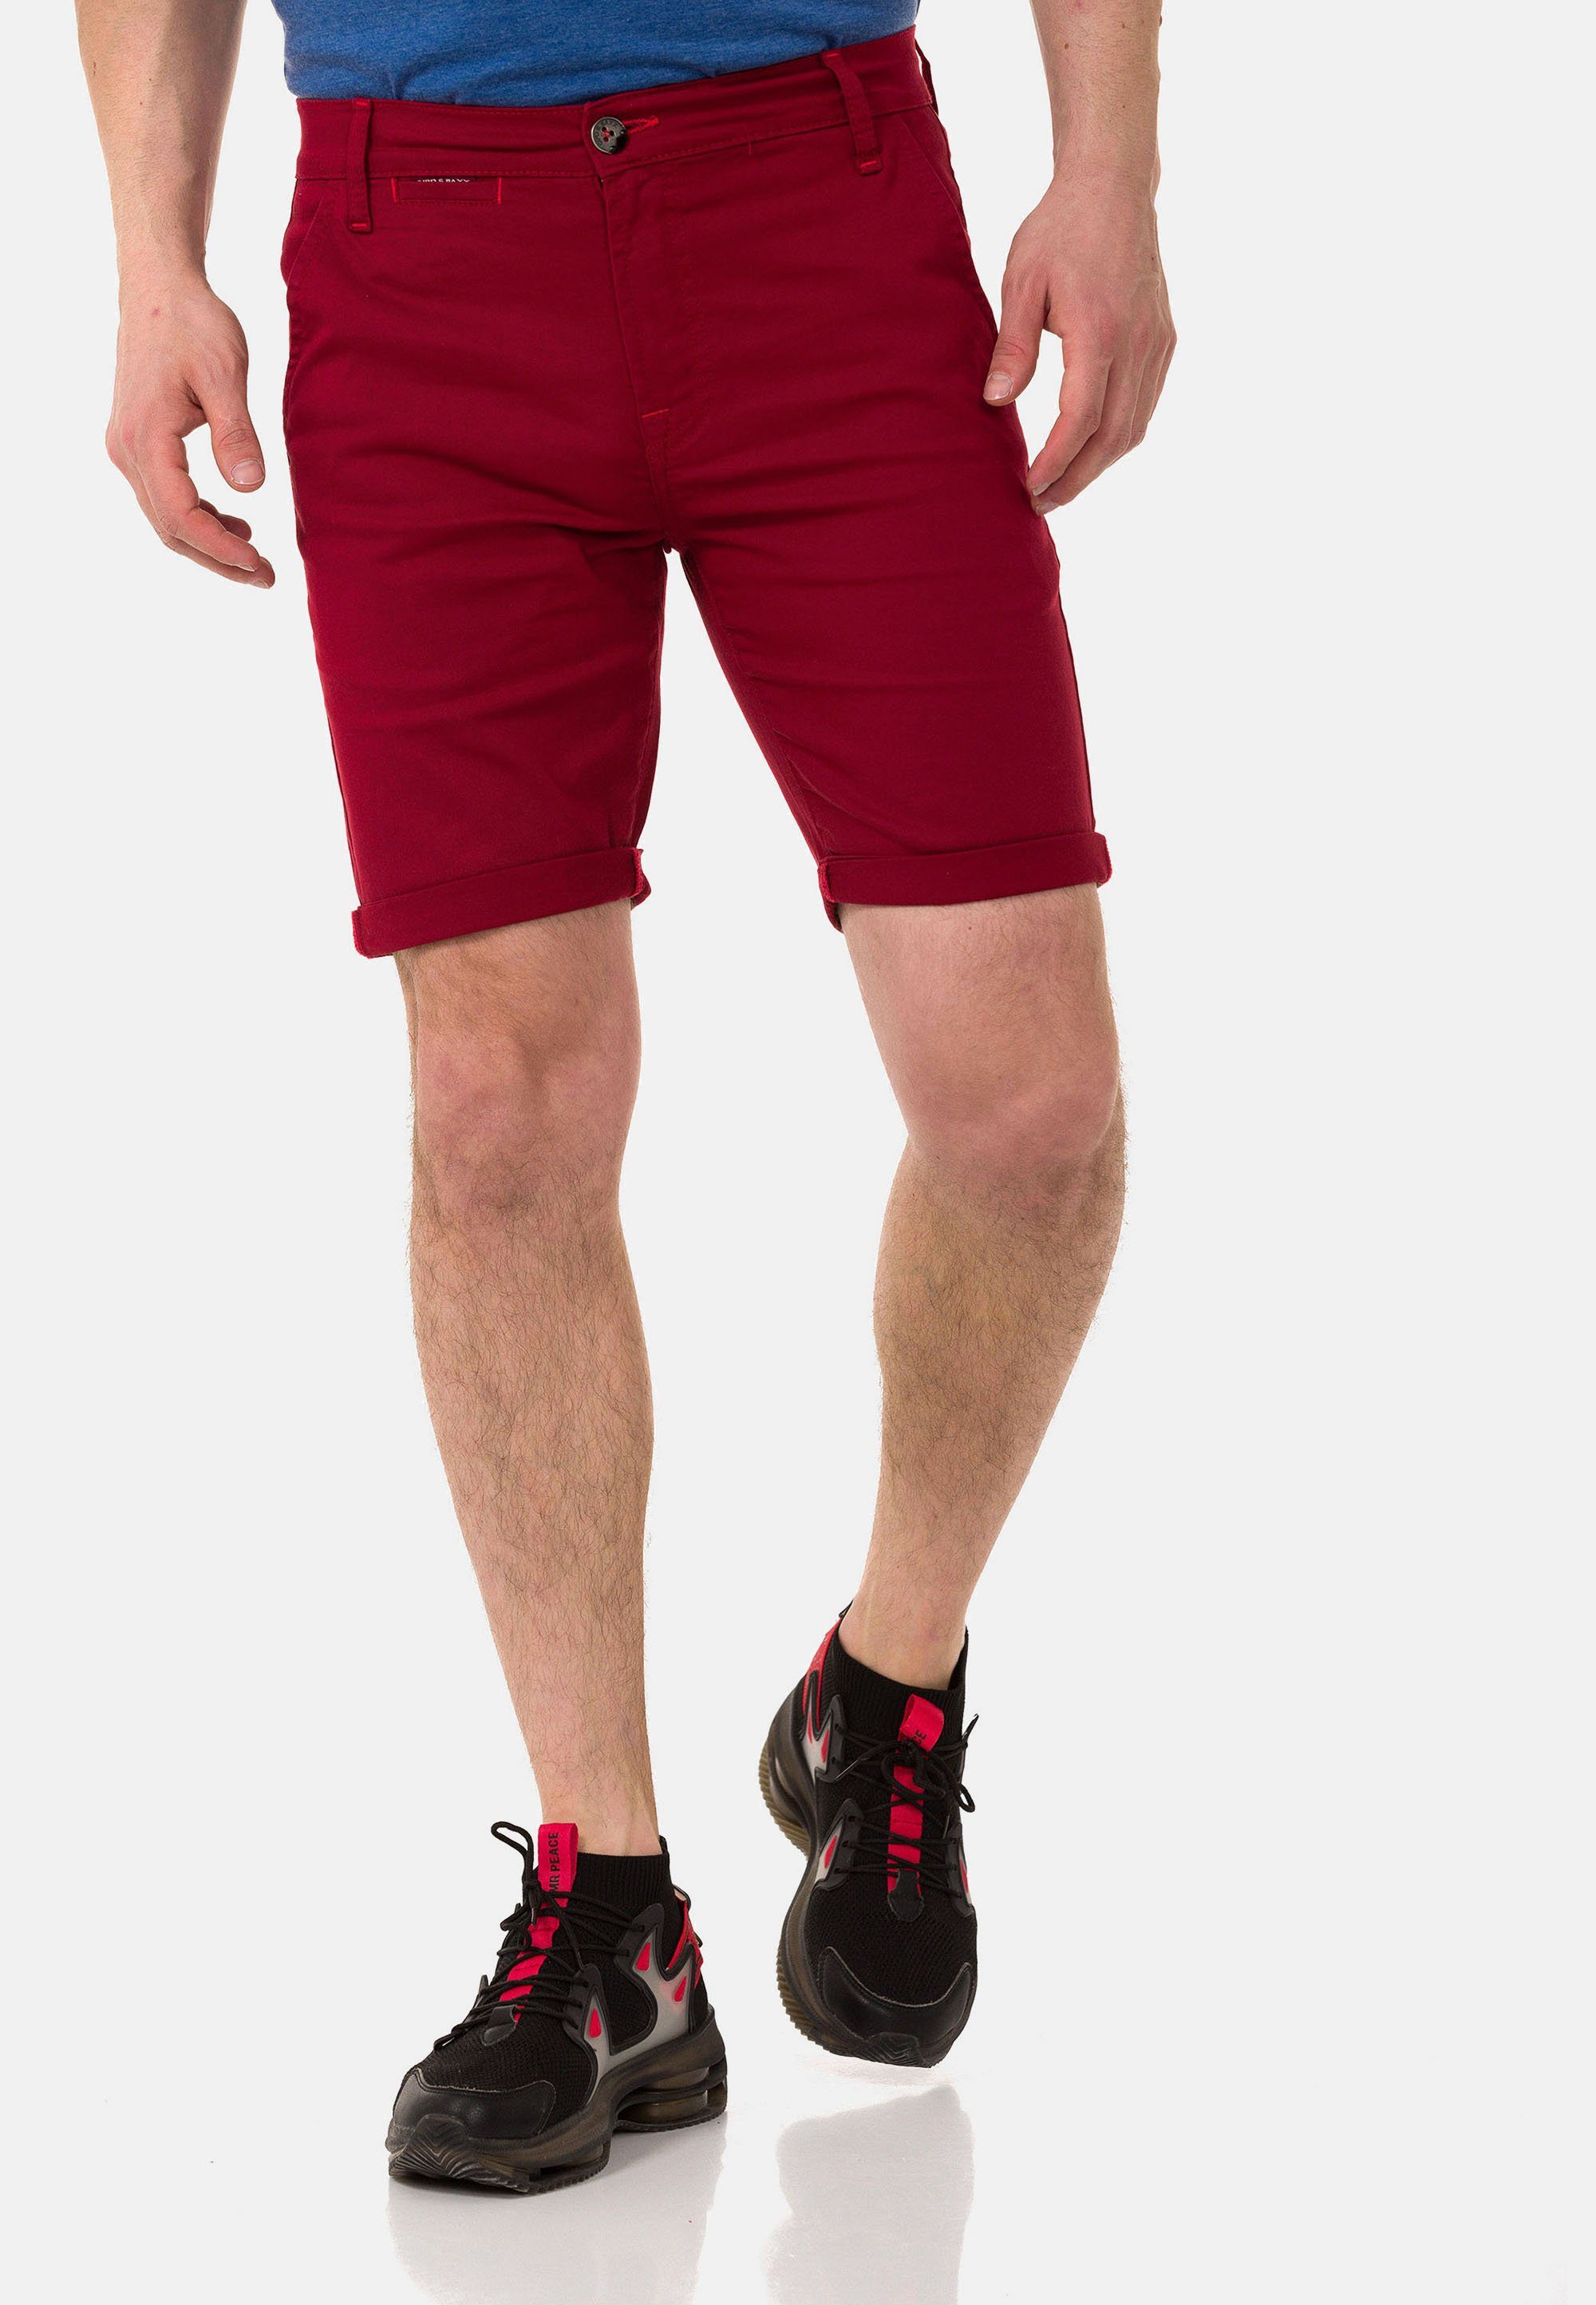 Cipo & Baxx Shorts im einfarbigen Look rot